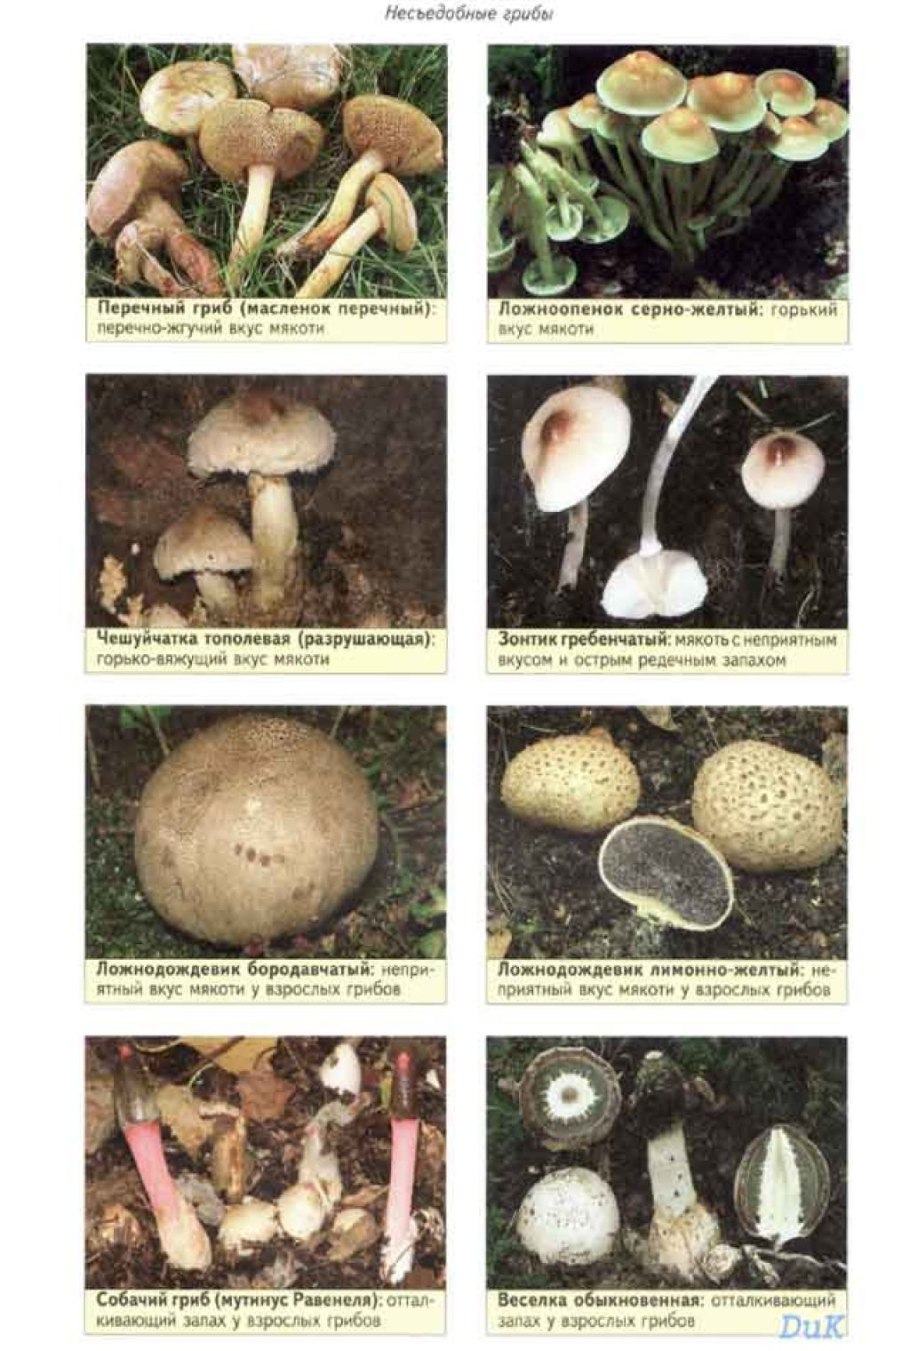 все виды съедобных грибов фото и названия